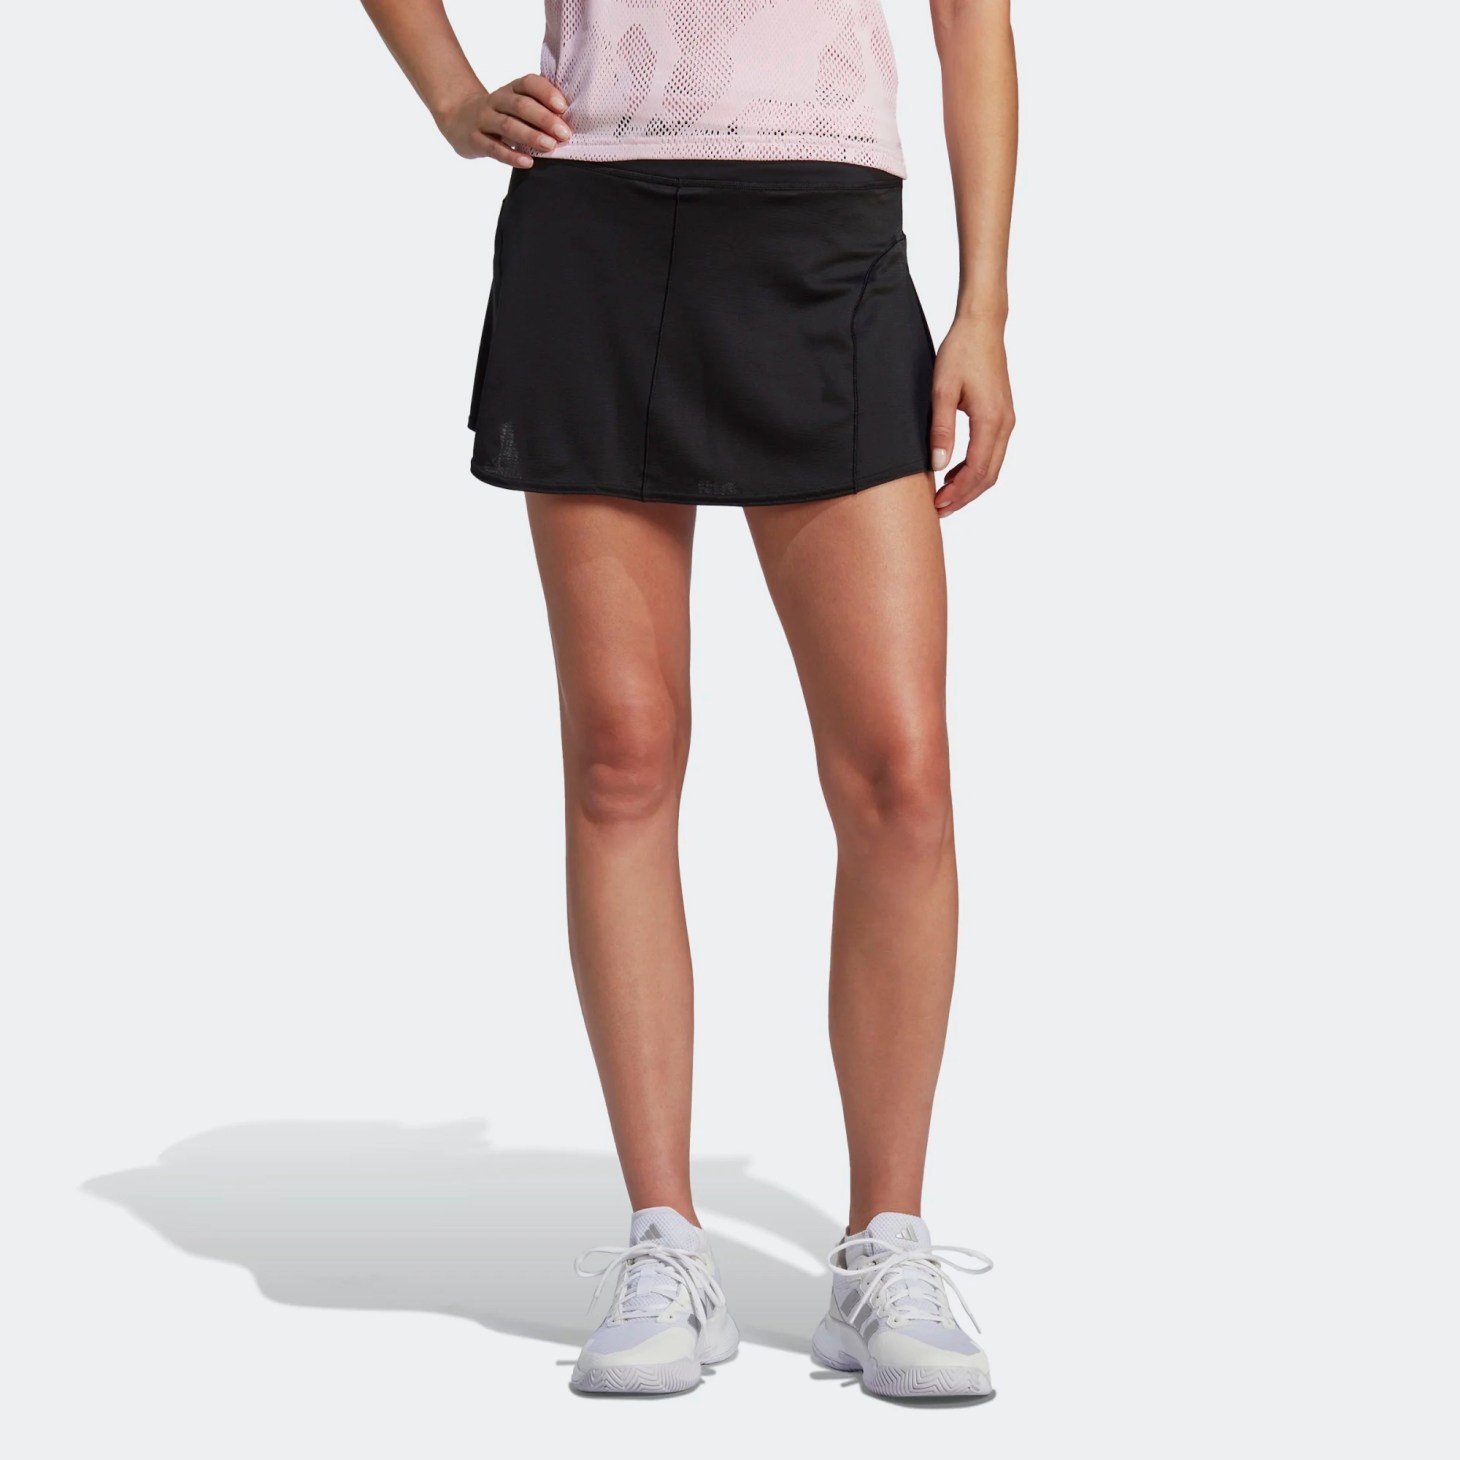 Adidas, Tennis Match Skirt, best tennis skirts